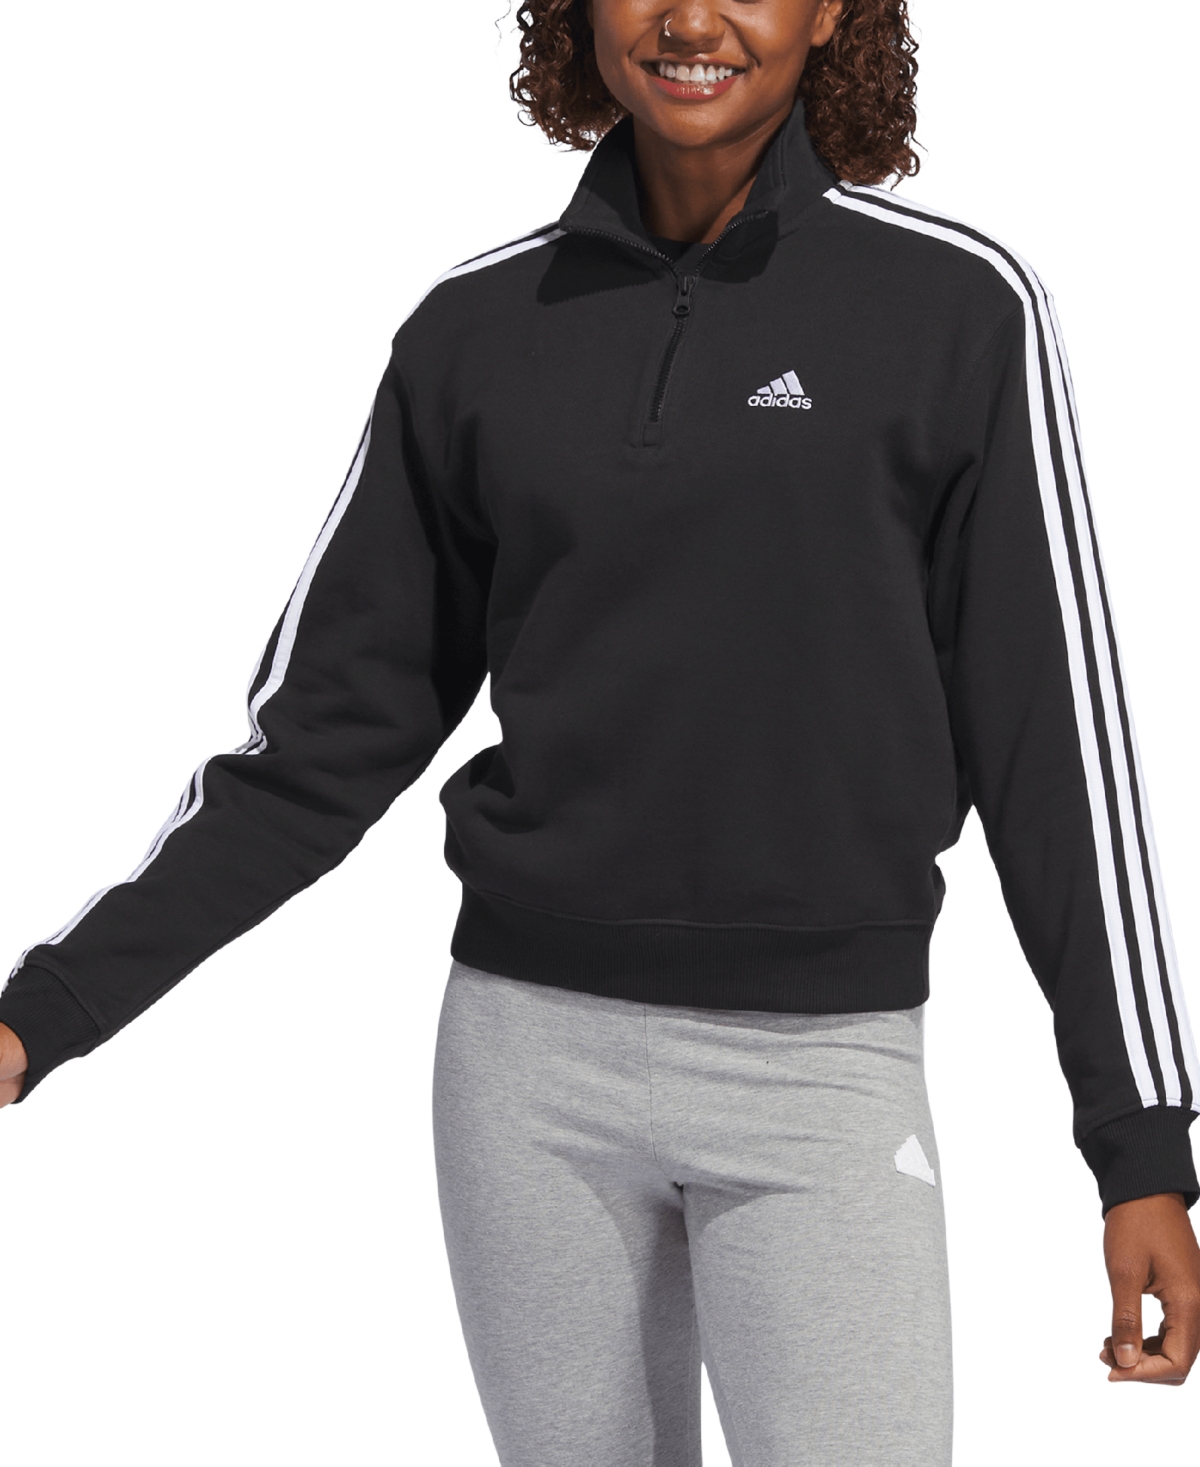 Adidas Originals Women's Cotton 3-stripes Quarter-zip Sweatshirt In Black,white